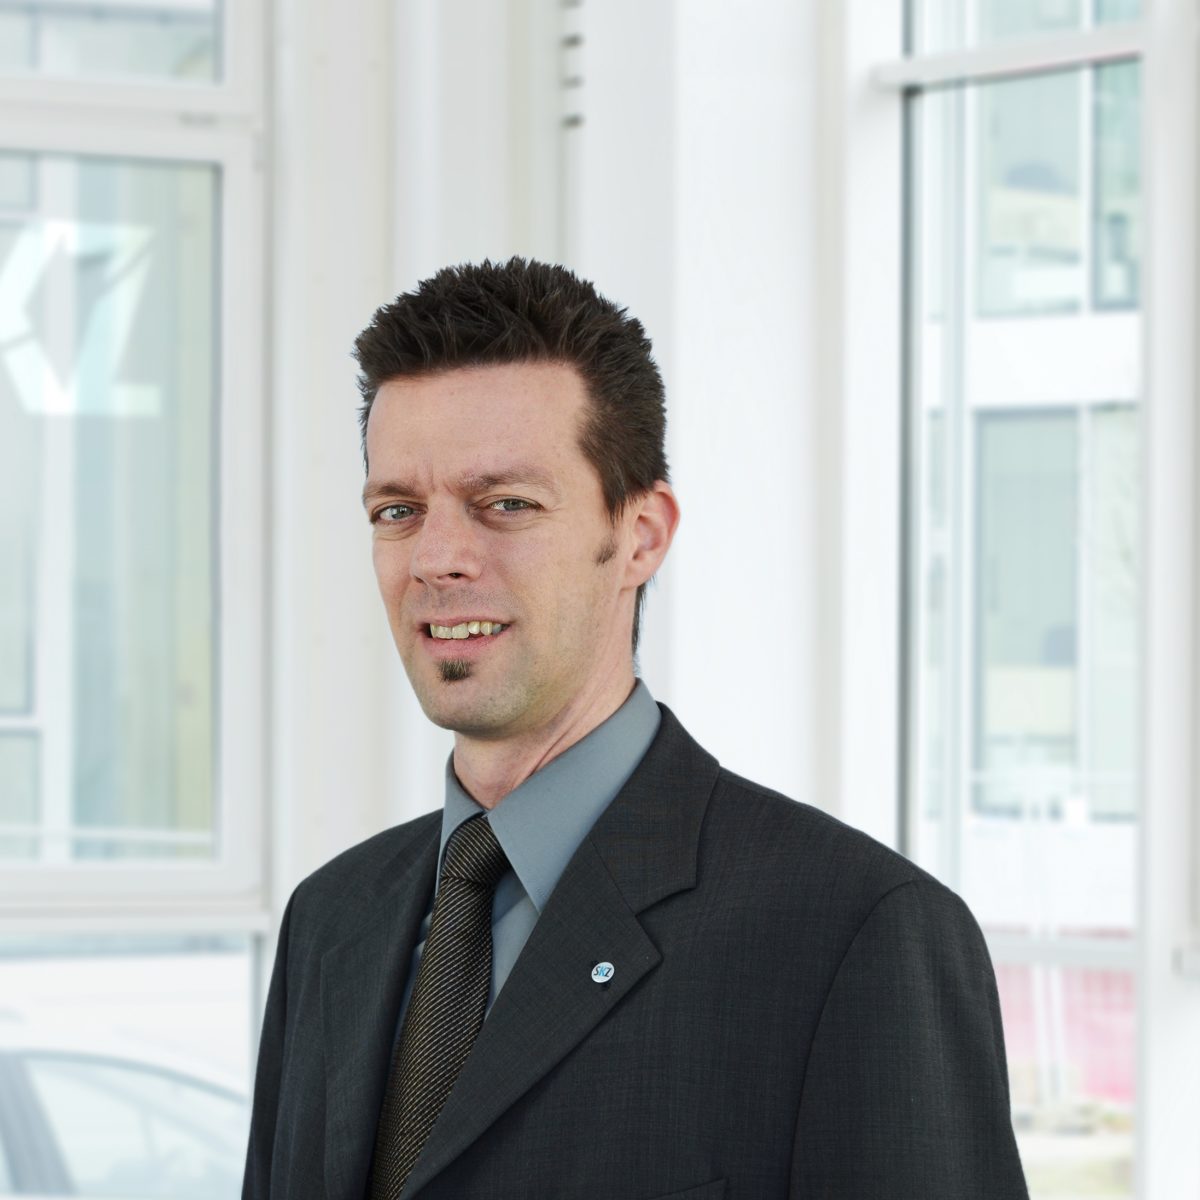 Portrait of smiling SKZ Kunststoff-Zentrum employee in black suit